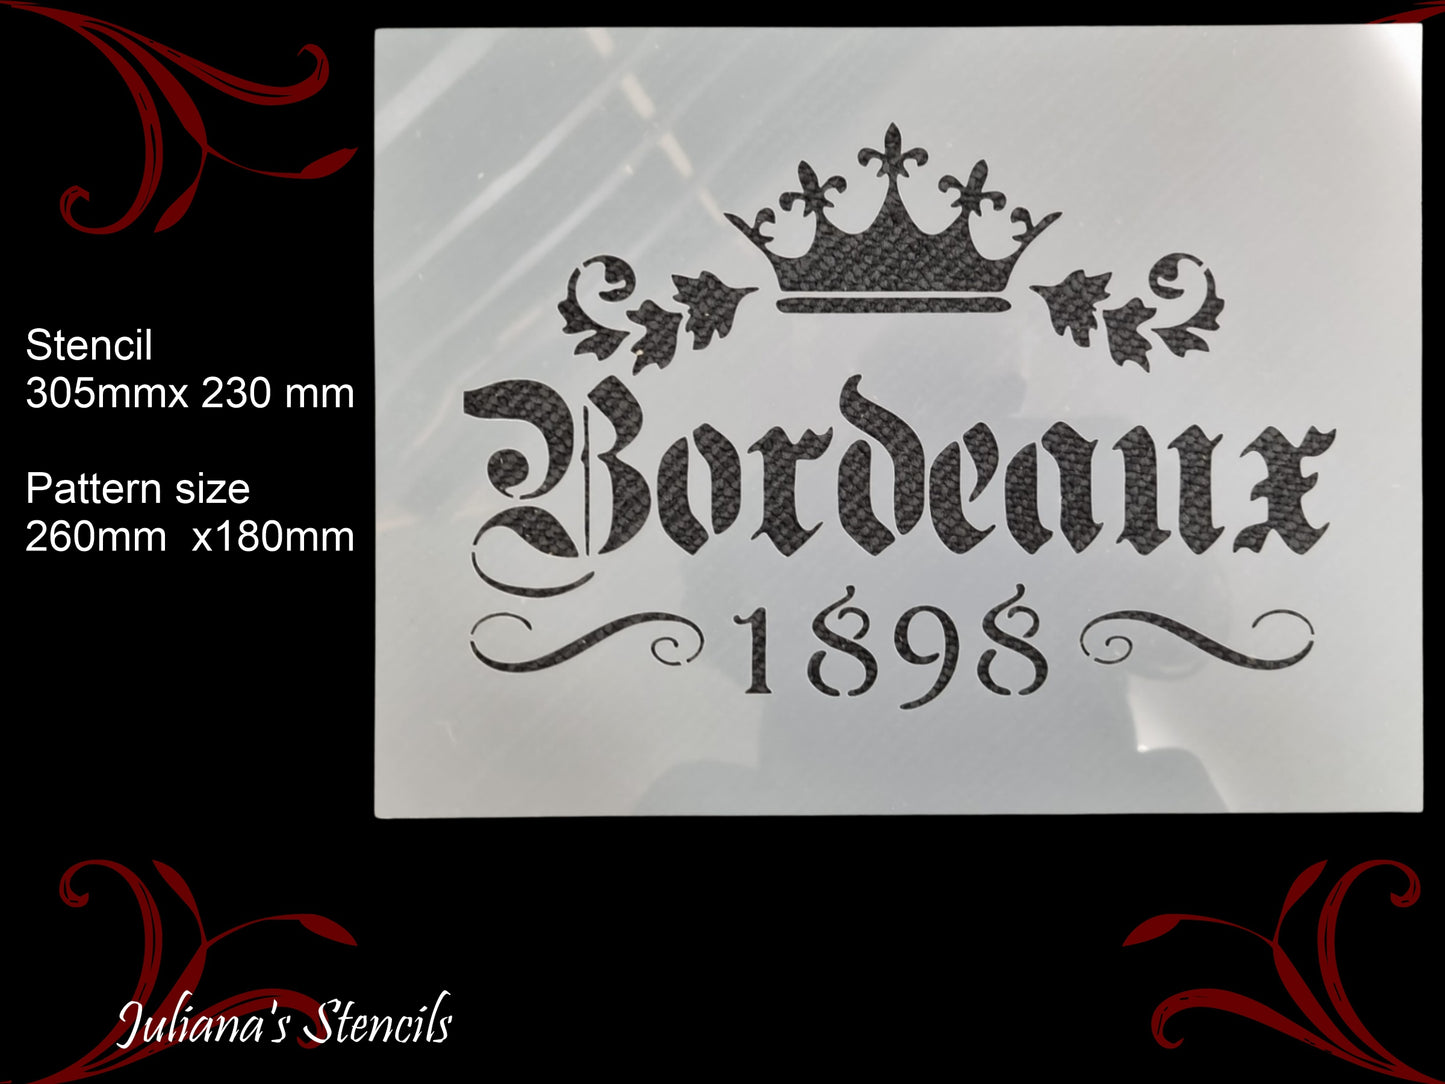 Bordeaux 1898 French Provence premium paint stencil 250mm x 165mm - Da Vinci Chalk Paint  Shoppe